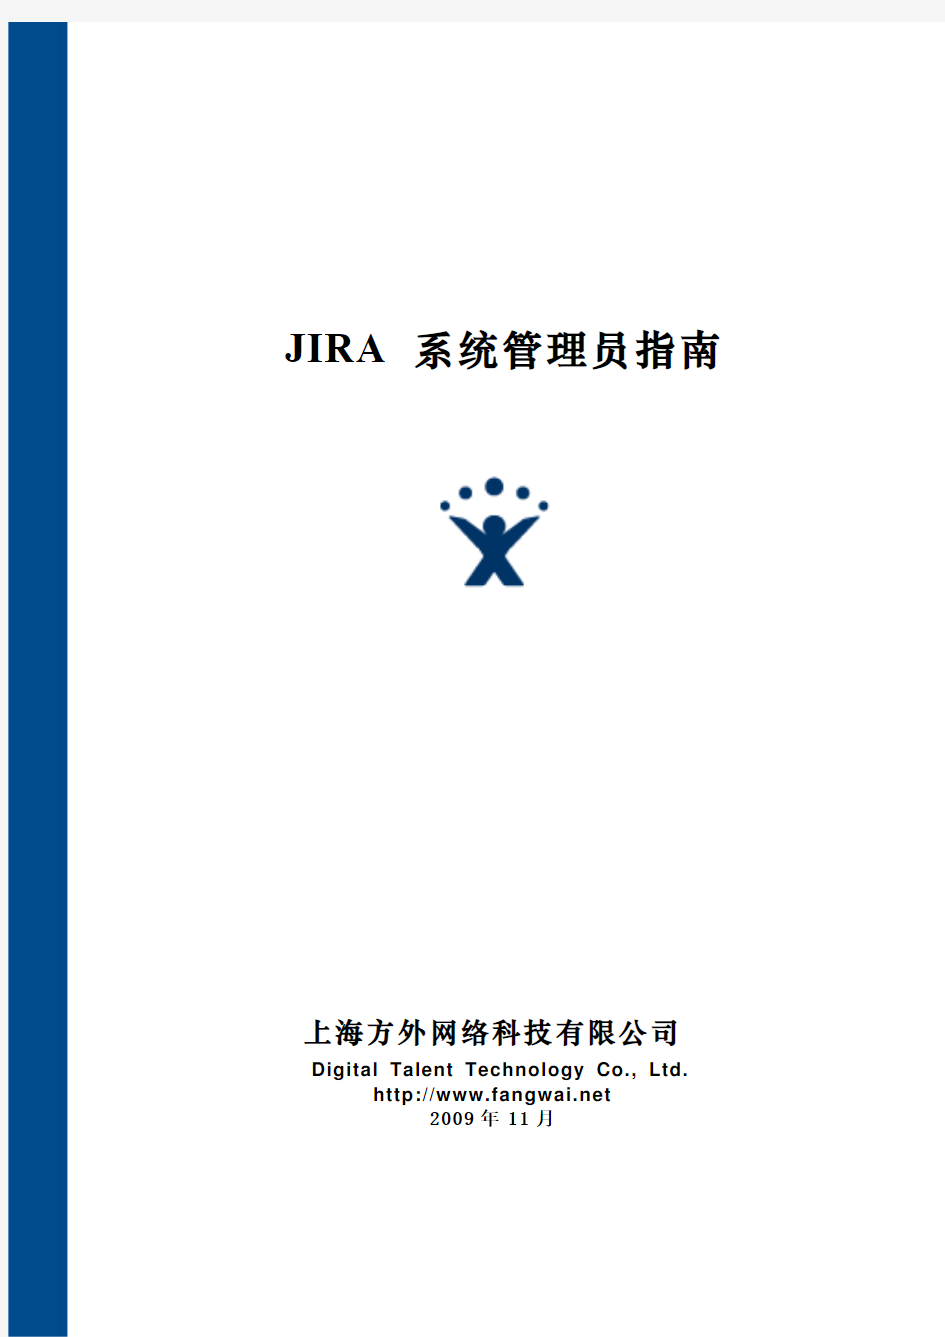 JIRA系统管理员指南_v4.2.1_中文